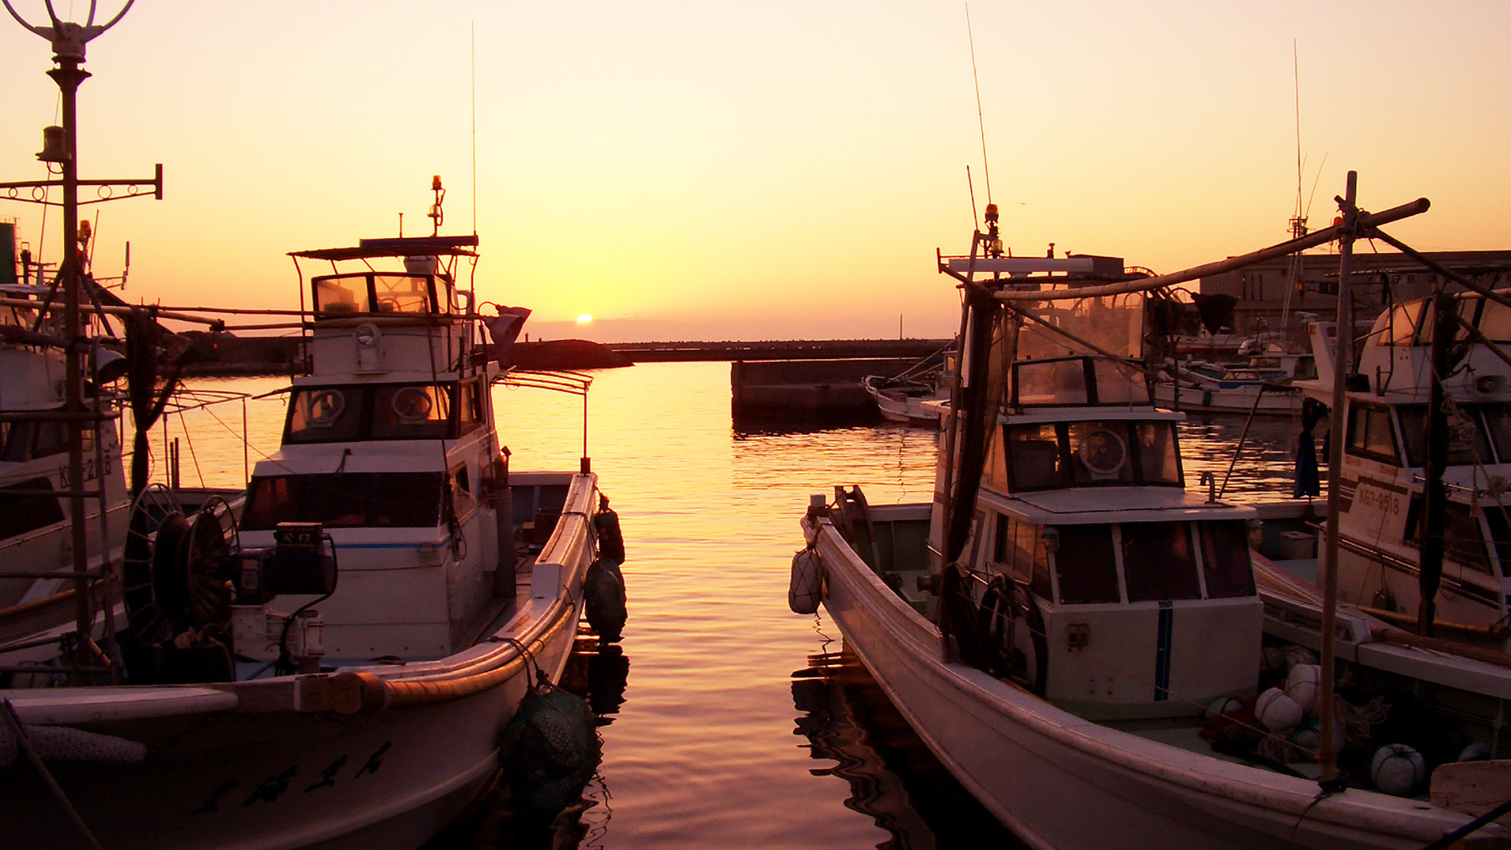 *＜旧西之表港＞東シナ海に沈む夕日の絶景をご覧いただけます。